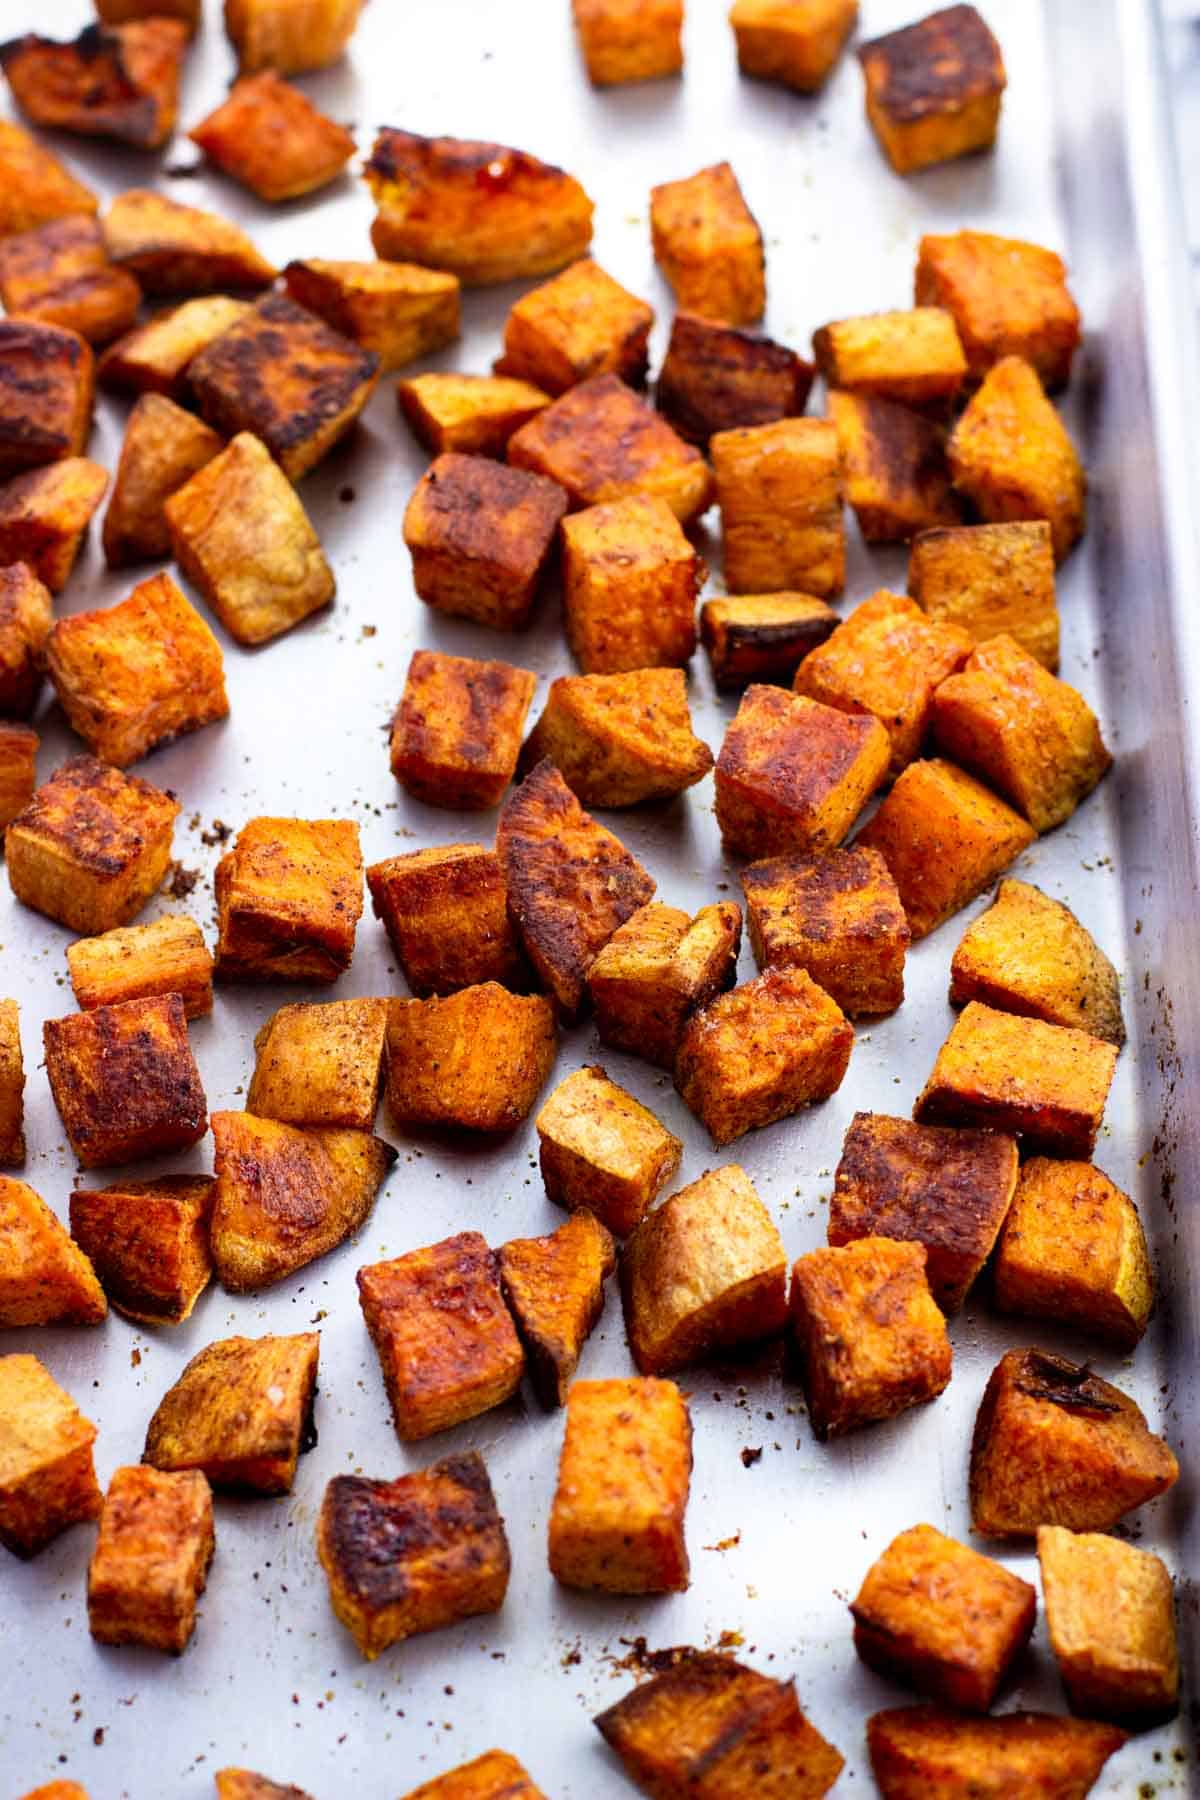 Roasted sweet potato cubes on a metal sheet pan.